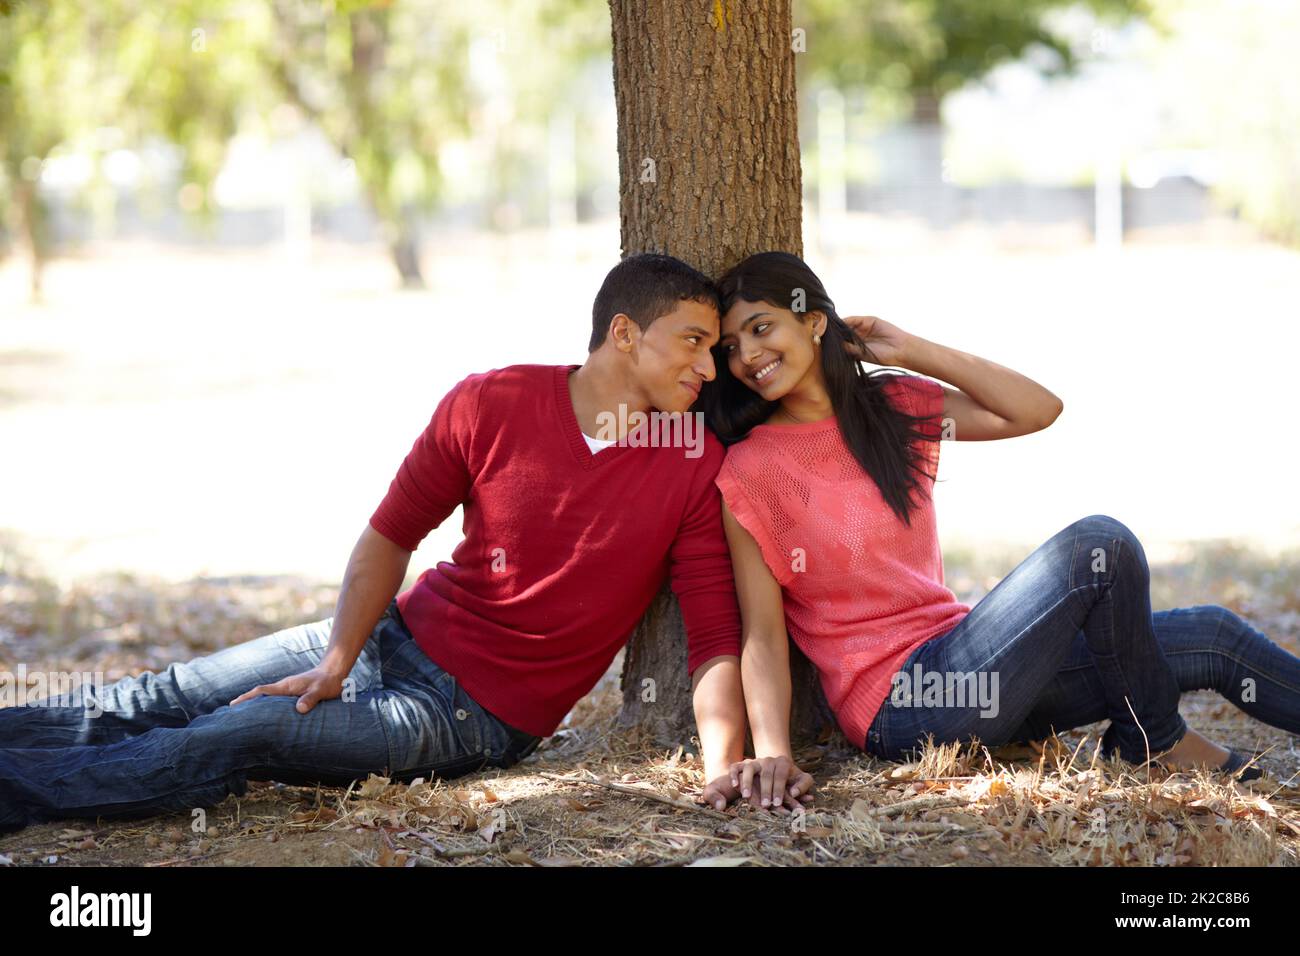 Jeune amour. Photo d'un jeune couple affectueux assis ensemble sous un arbre dans le parc. Banque D'Images